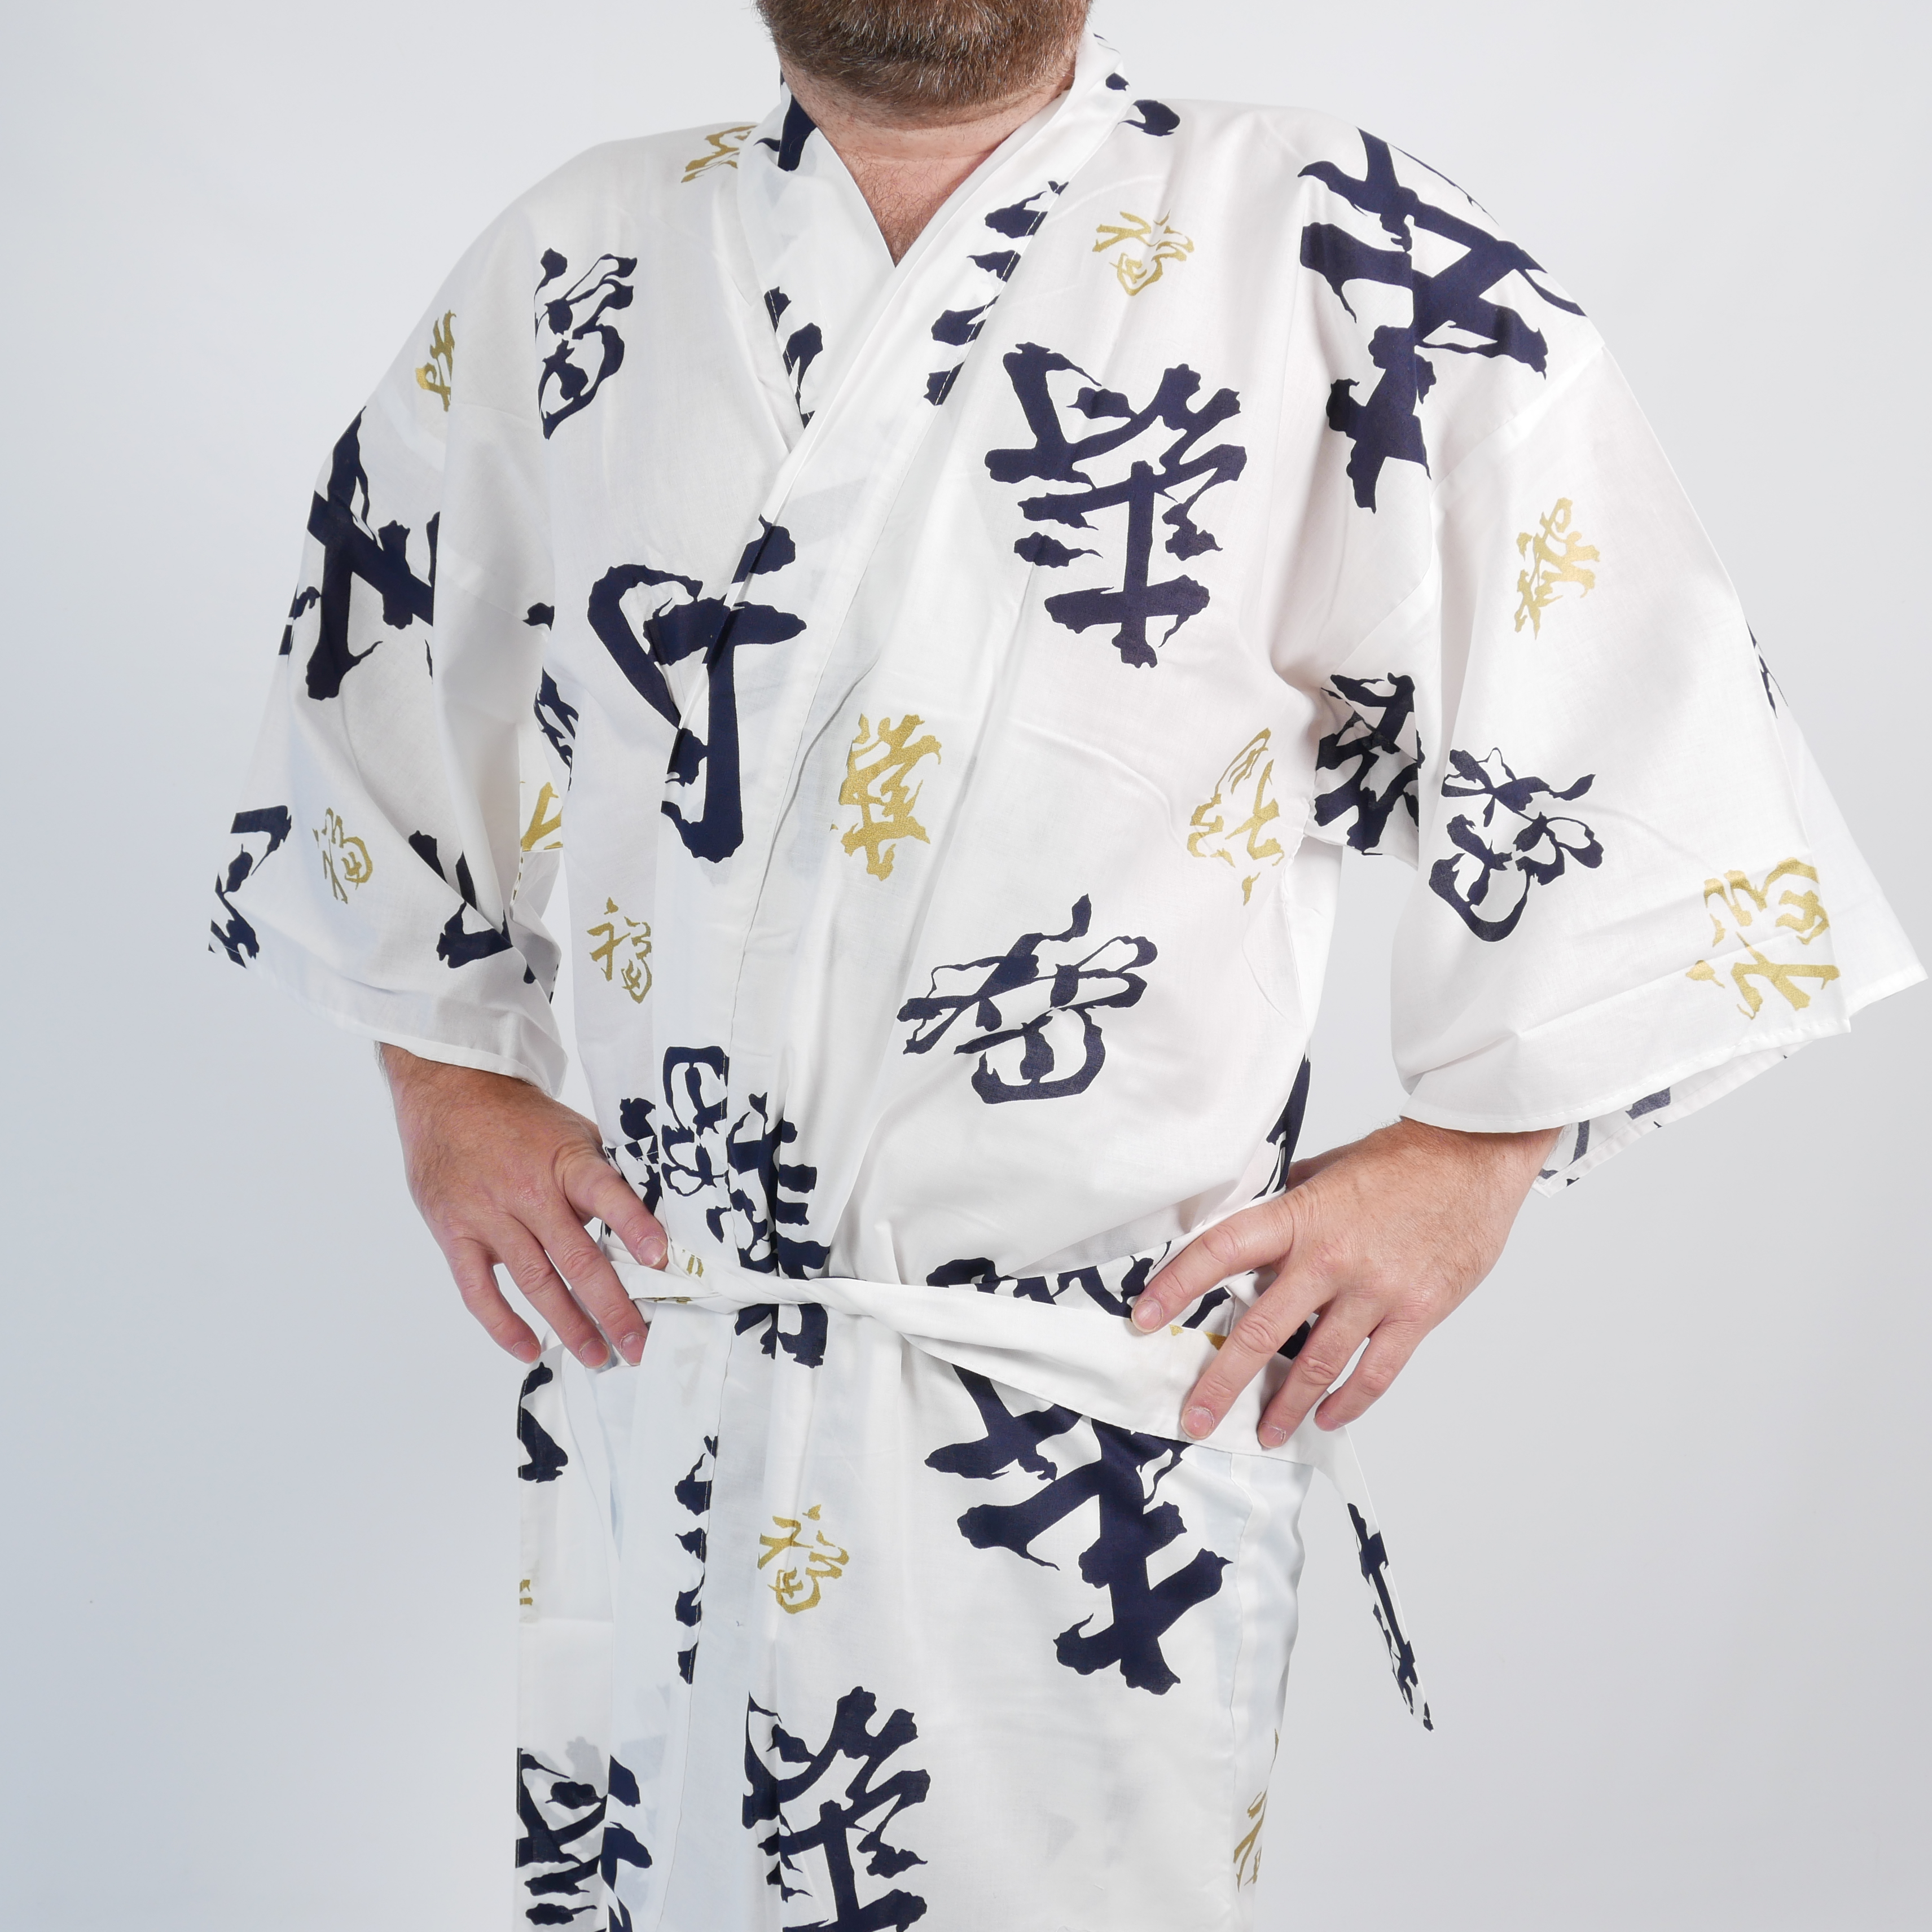 https://tsuru.fr/27775/kimono-tradizionale-giapponese-happi-in-cotone-bianco-longevita-kanji-per-uomo.jpg